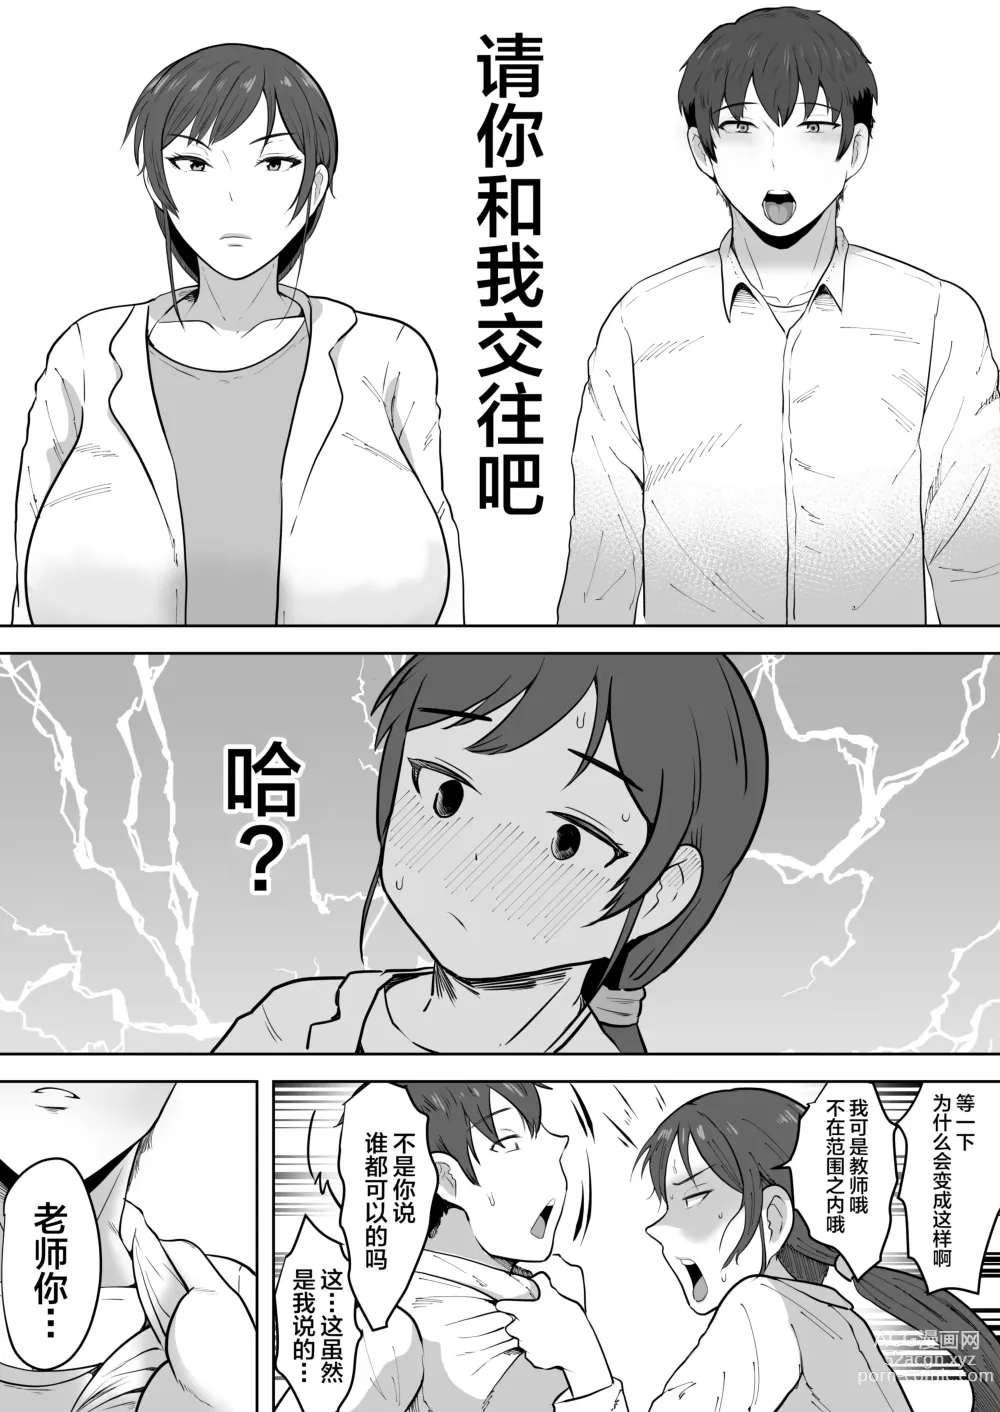 Page 7 of doujinshi Hoken no Sensei Shinobu 37-sai